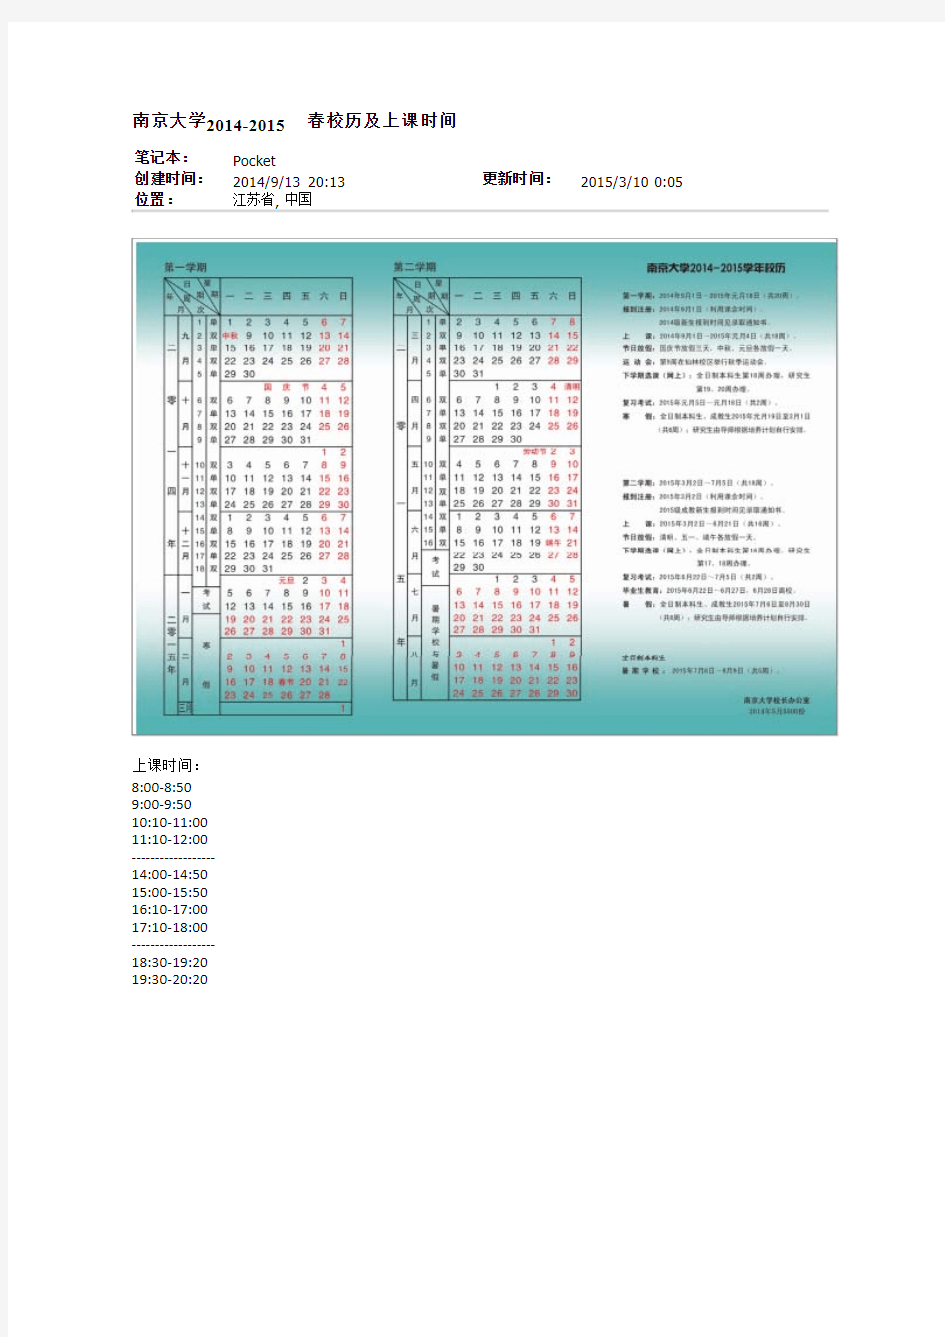 南京大学2014-2015春校历及上课时间